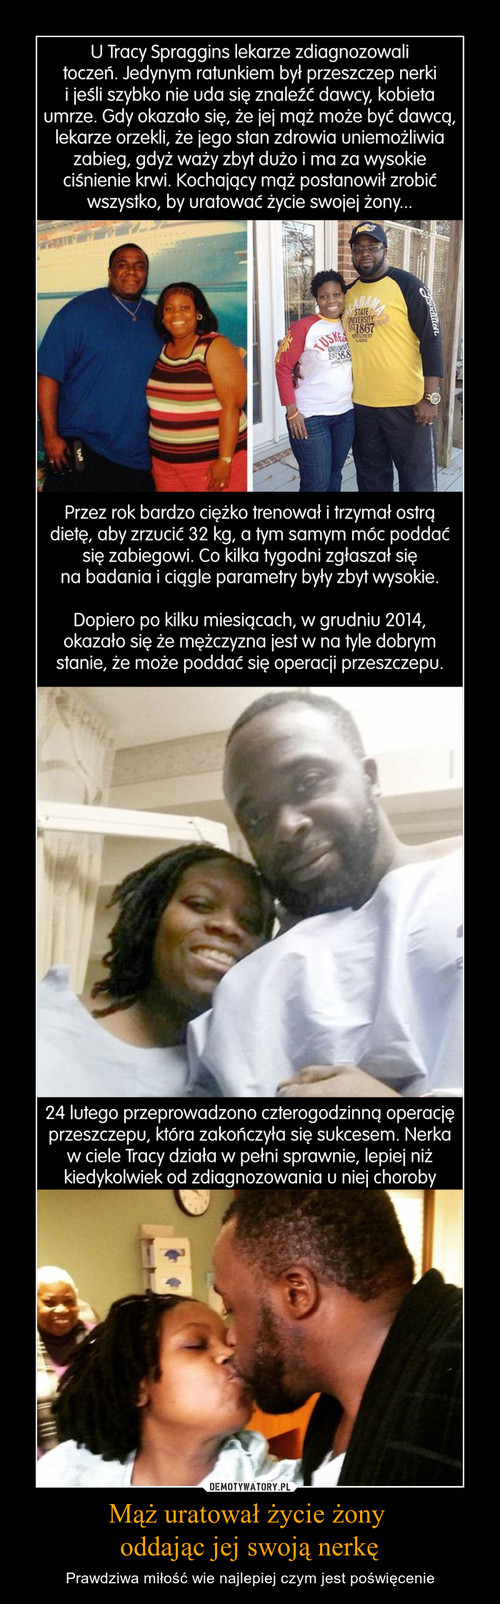 Mąż uratował życie żony 
oddając jej swoją nerkę